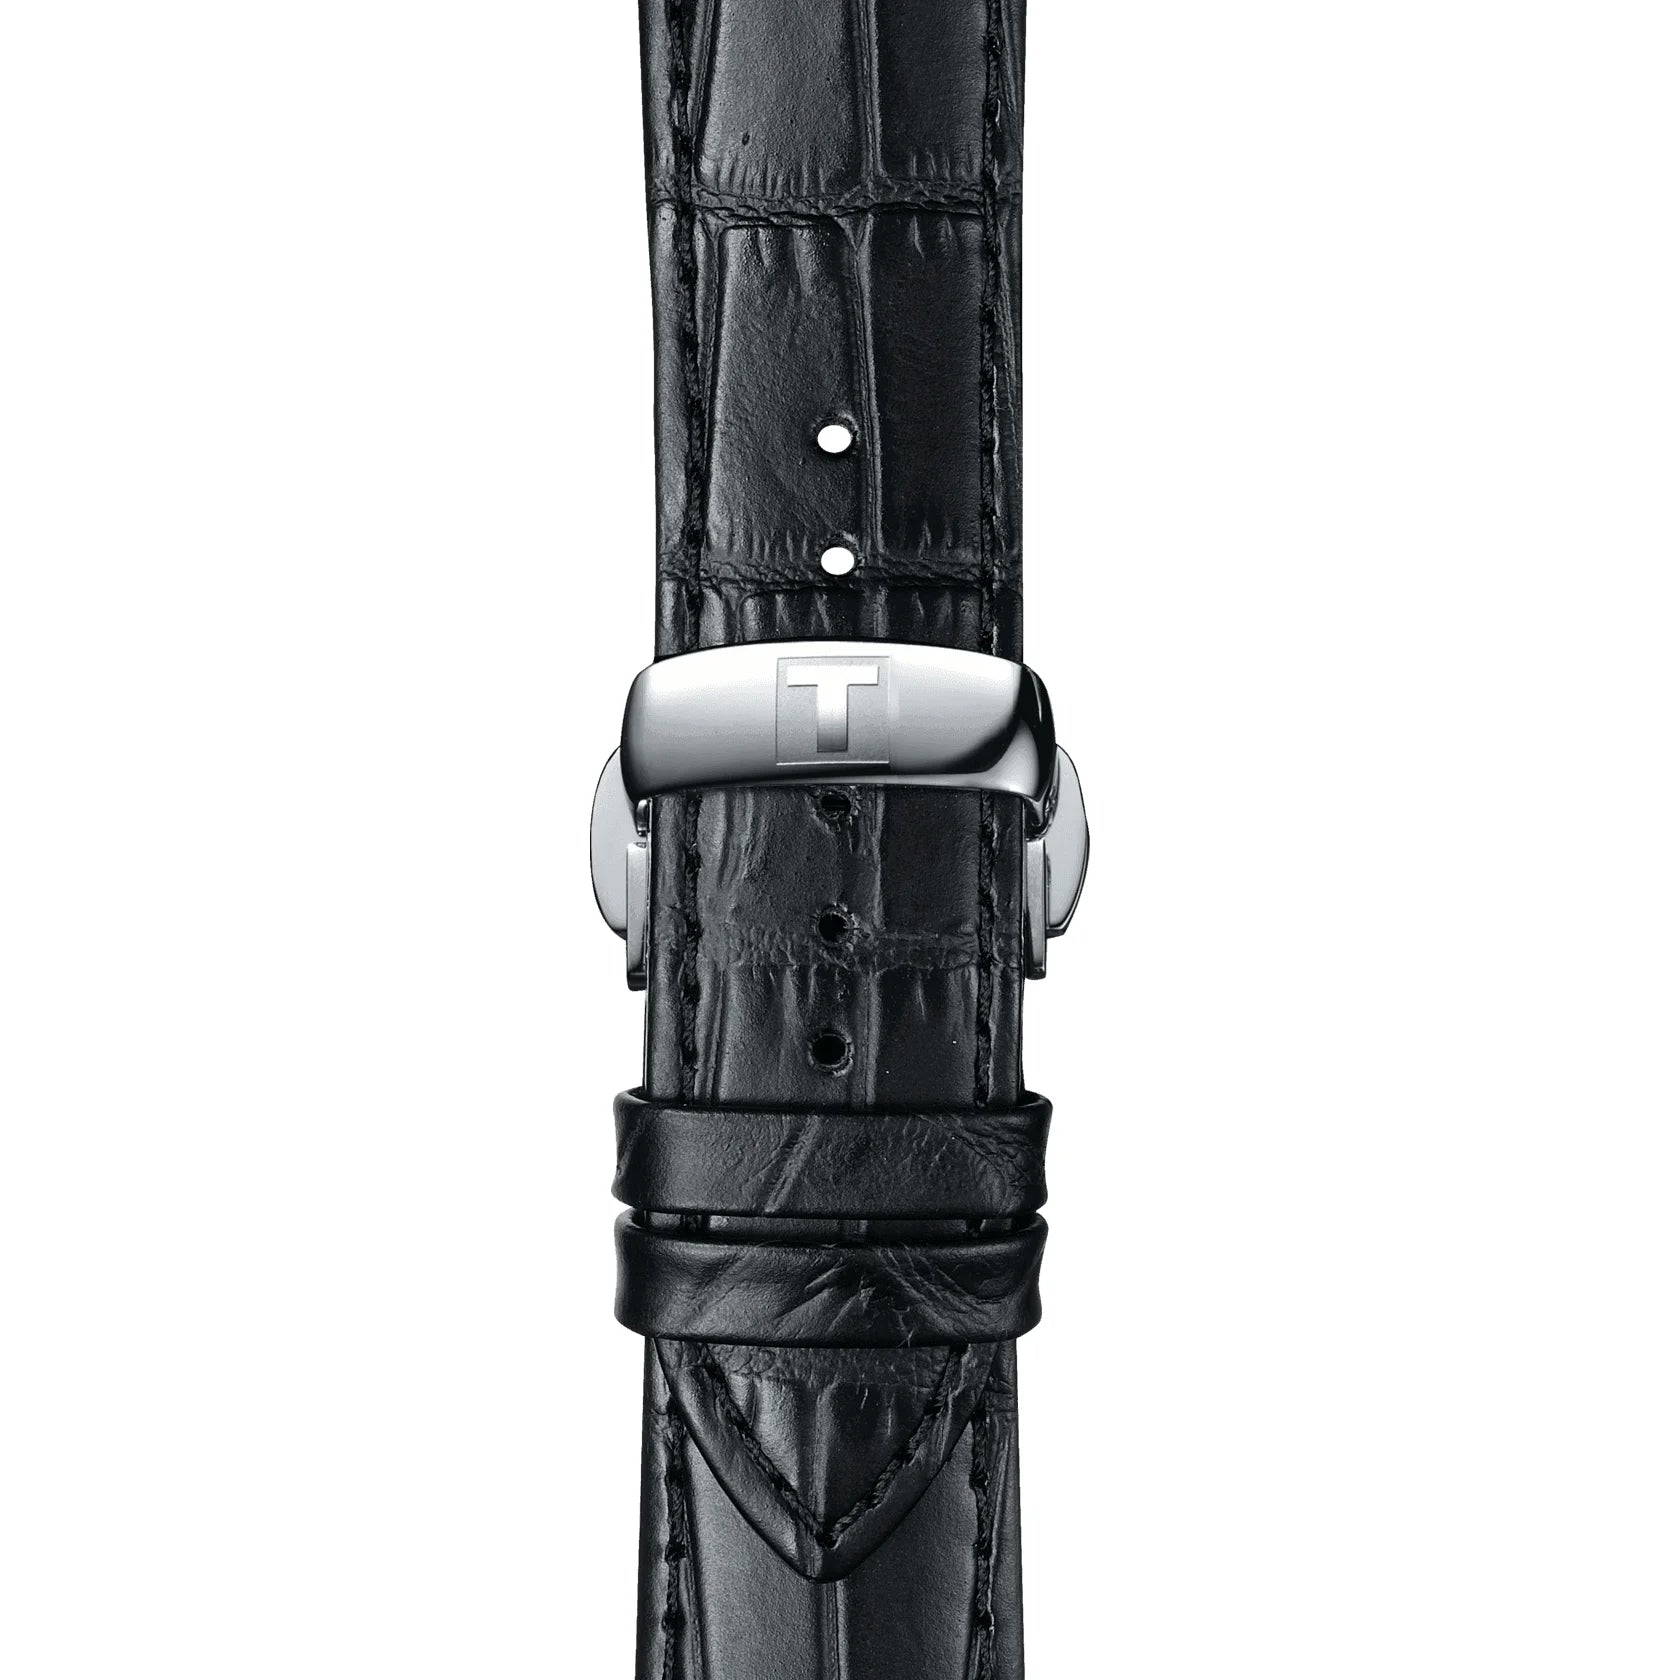 Tissot Chemin Des Tourelles Schweizer Automatic Armbanduhr für Herren mit schwarz Lederarmband und schwarz Zifferblatt ist Bei MyGeschenk zu attraktiven Preisen